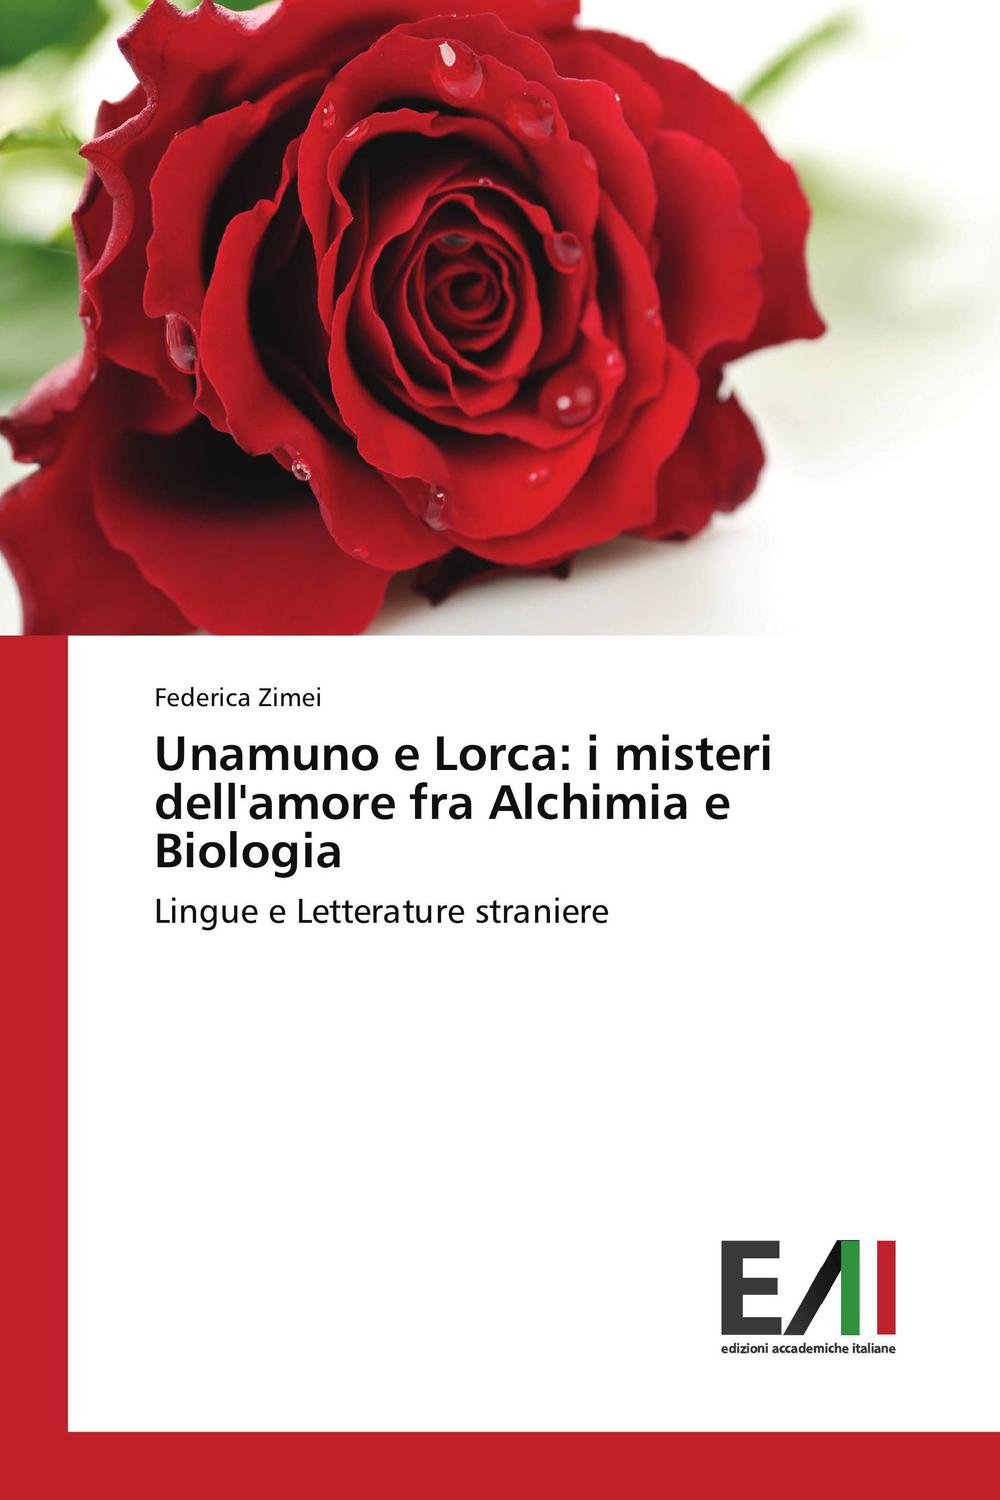 Unamuno e Lorca: i misteri dell'amore fra Alchimia e Biologia - Federica Zimei